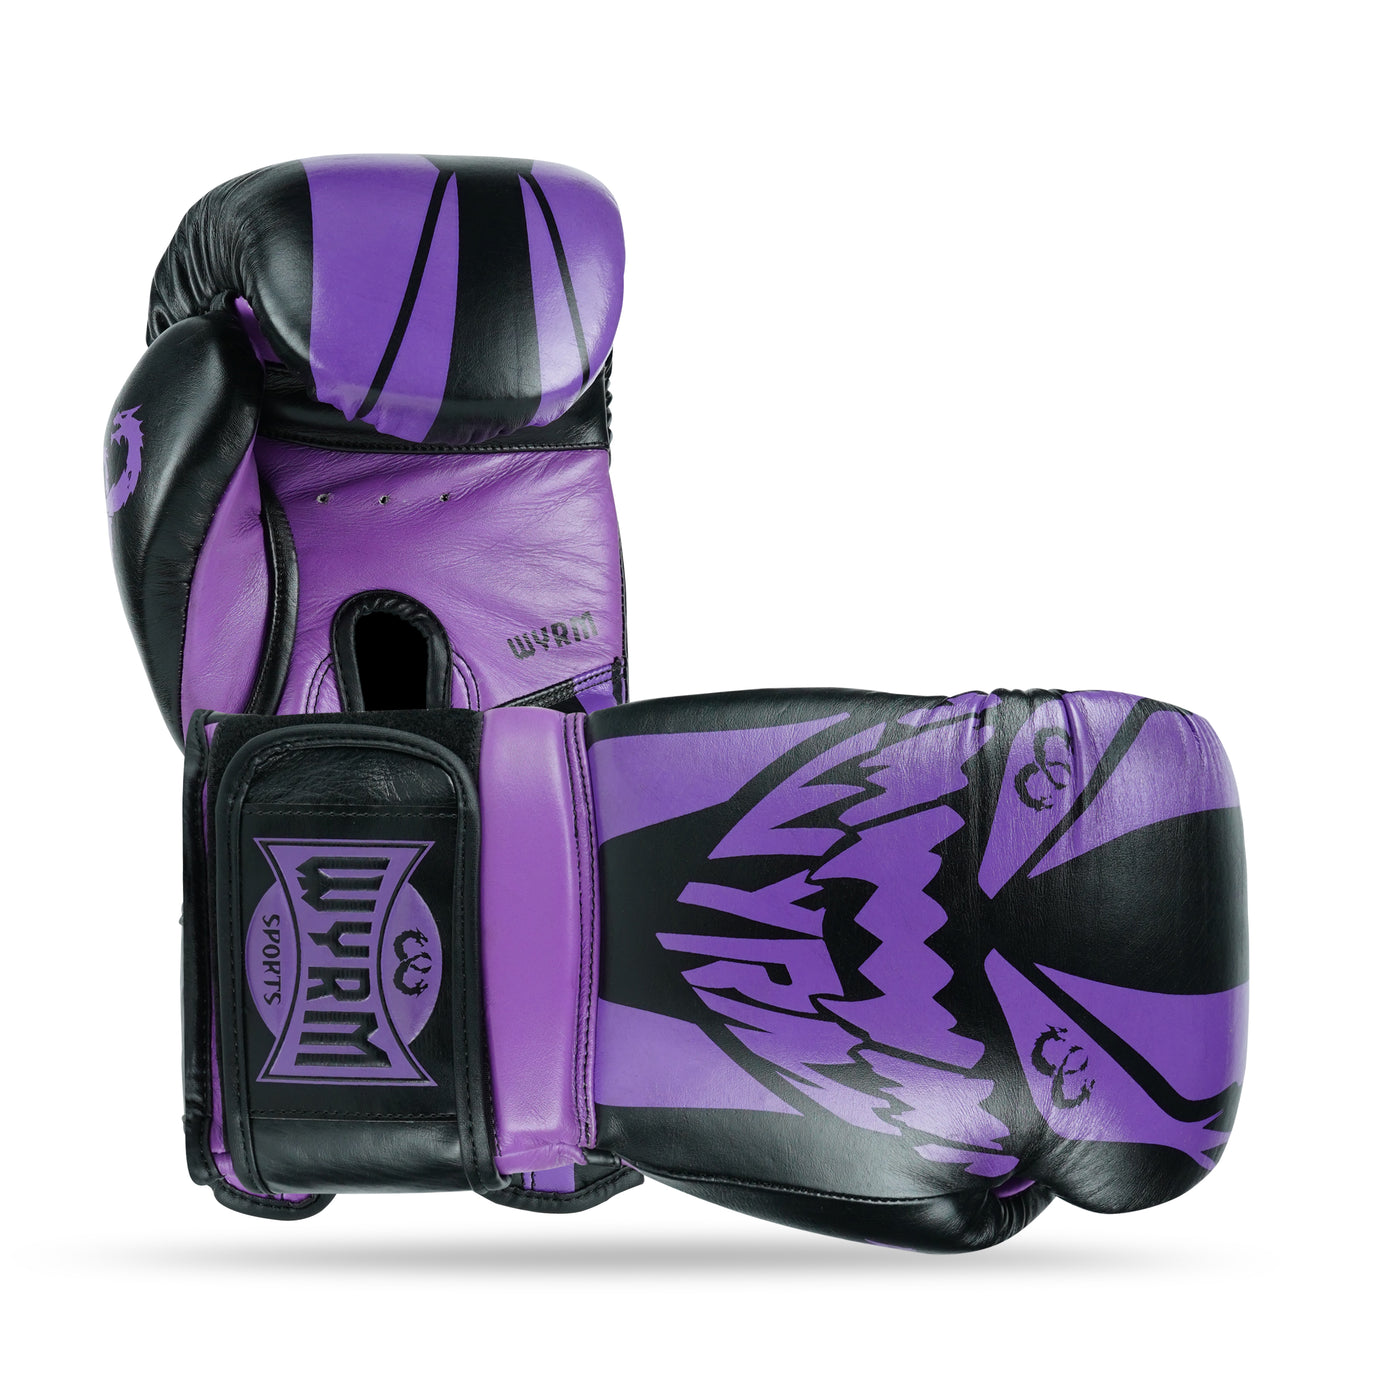 Devourer Black/Purple Genuine Leather Boxing Gloves